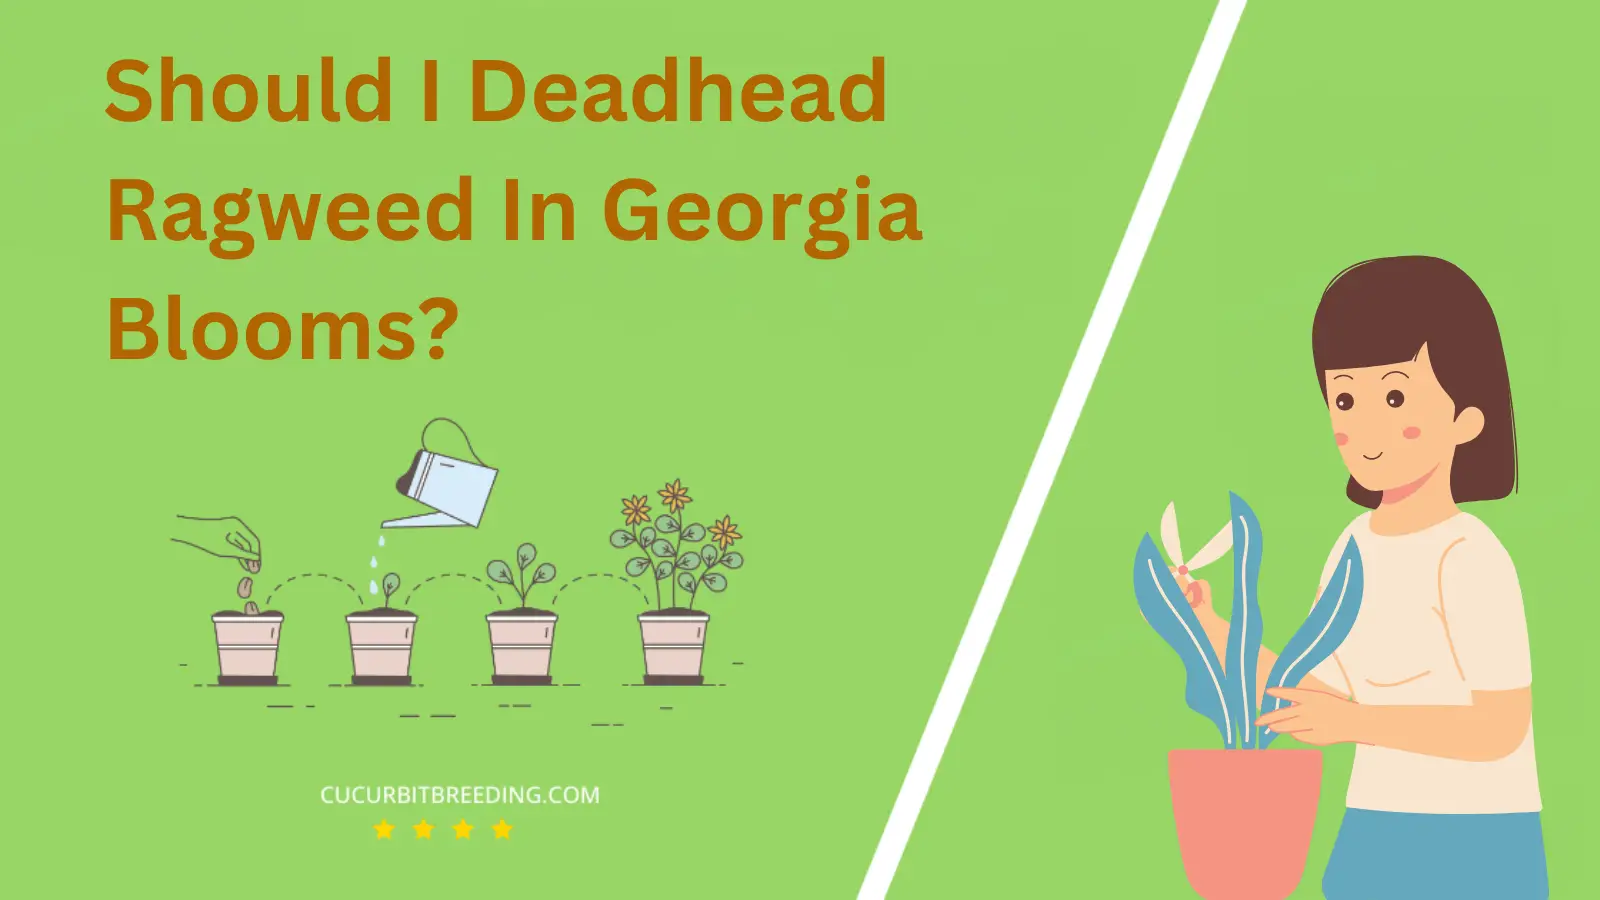 Should I Deadhead Ragweed In Georgia Blooms?